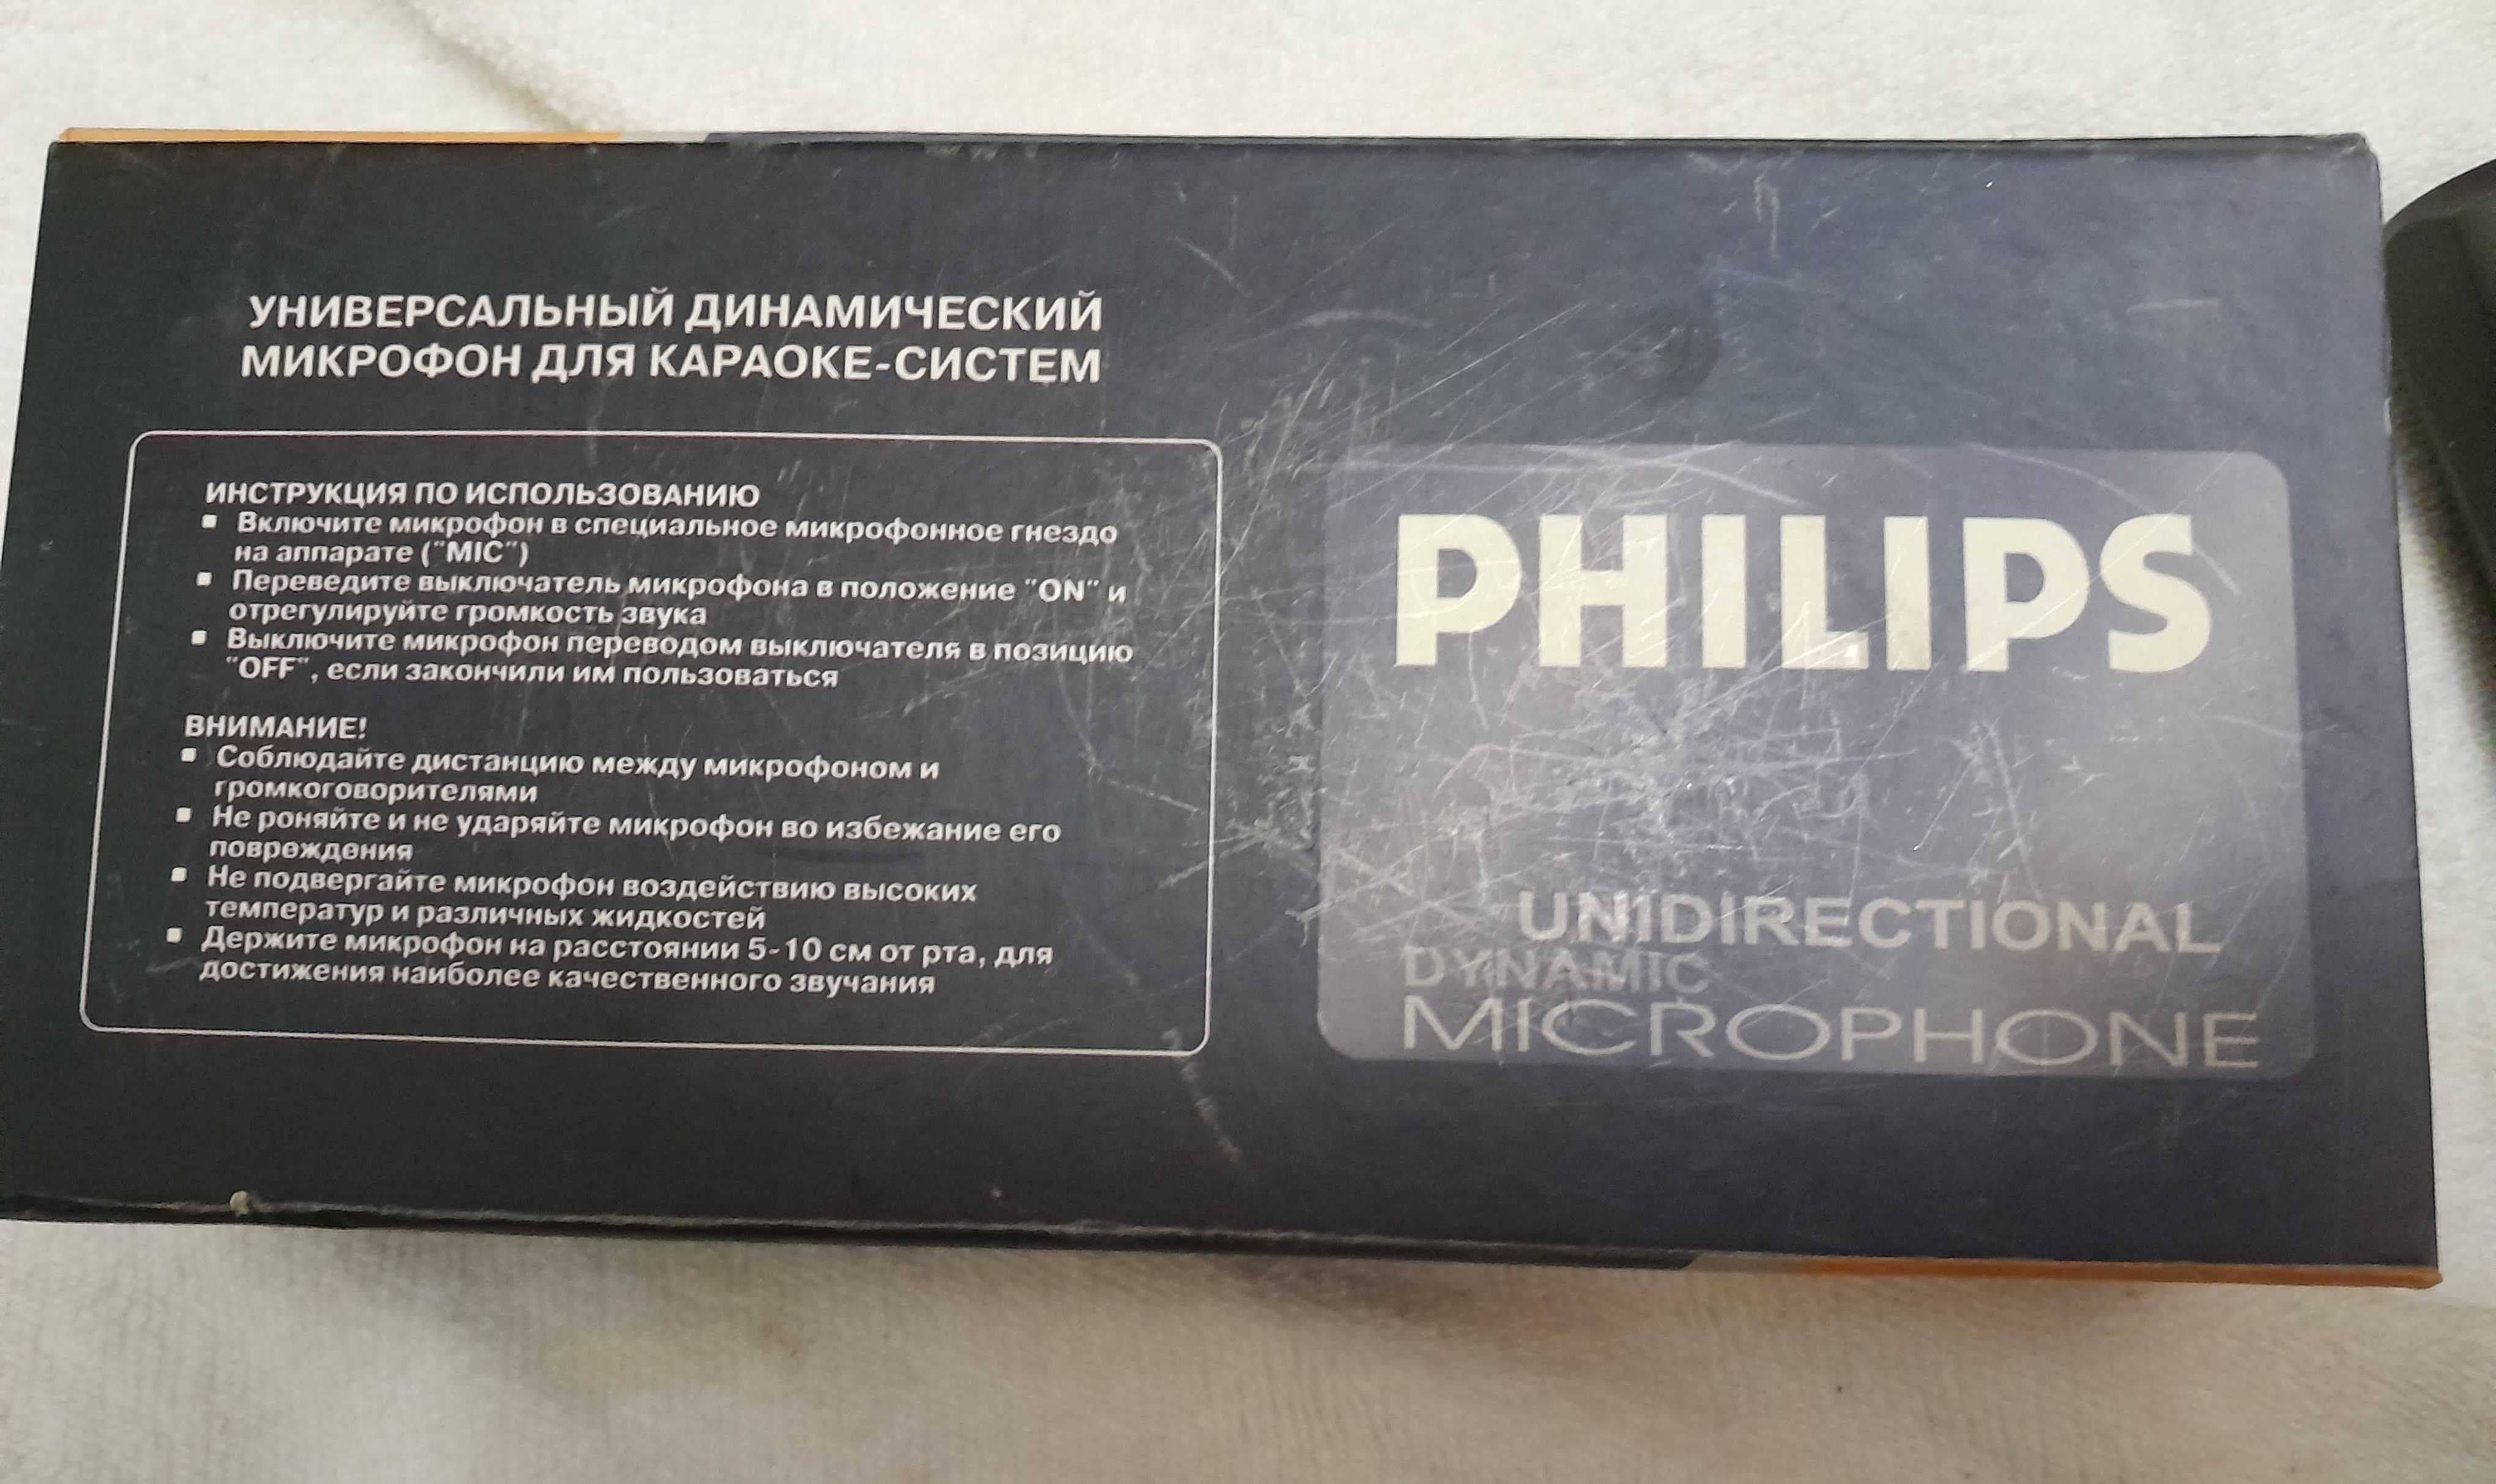 Микрофон для караоке Philips PH 830